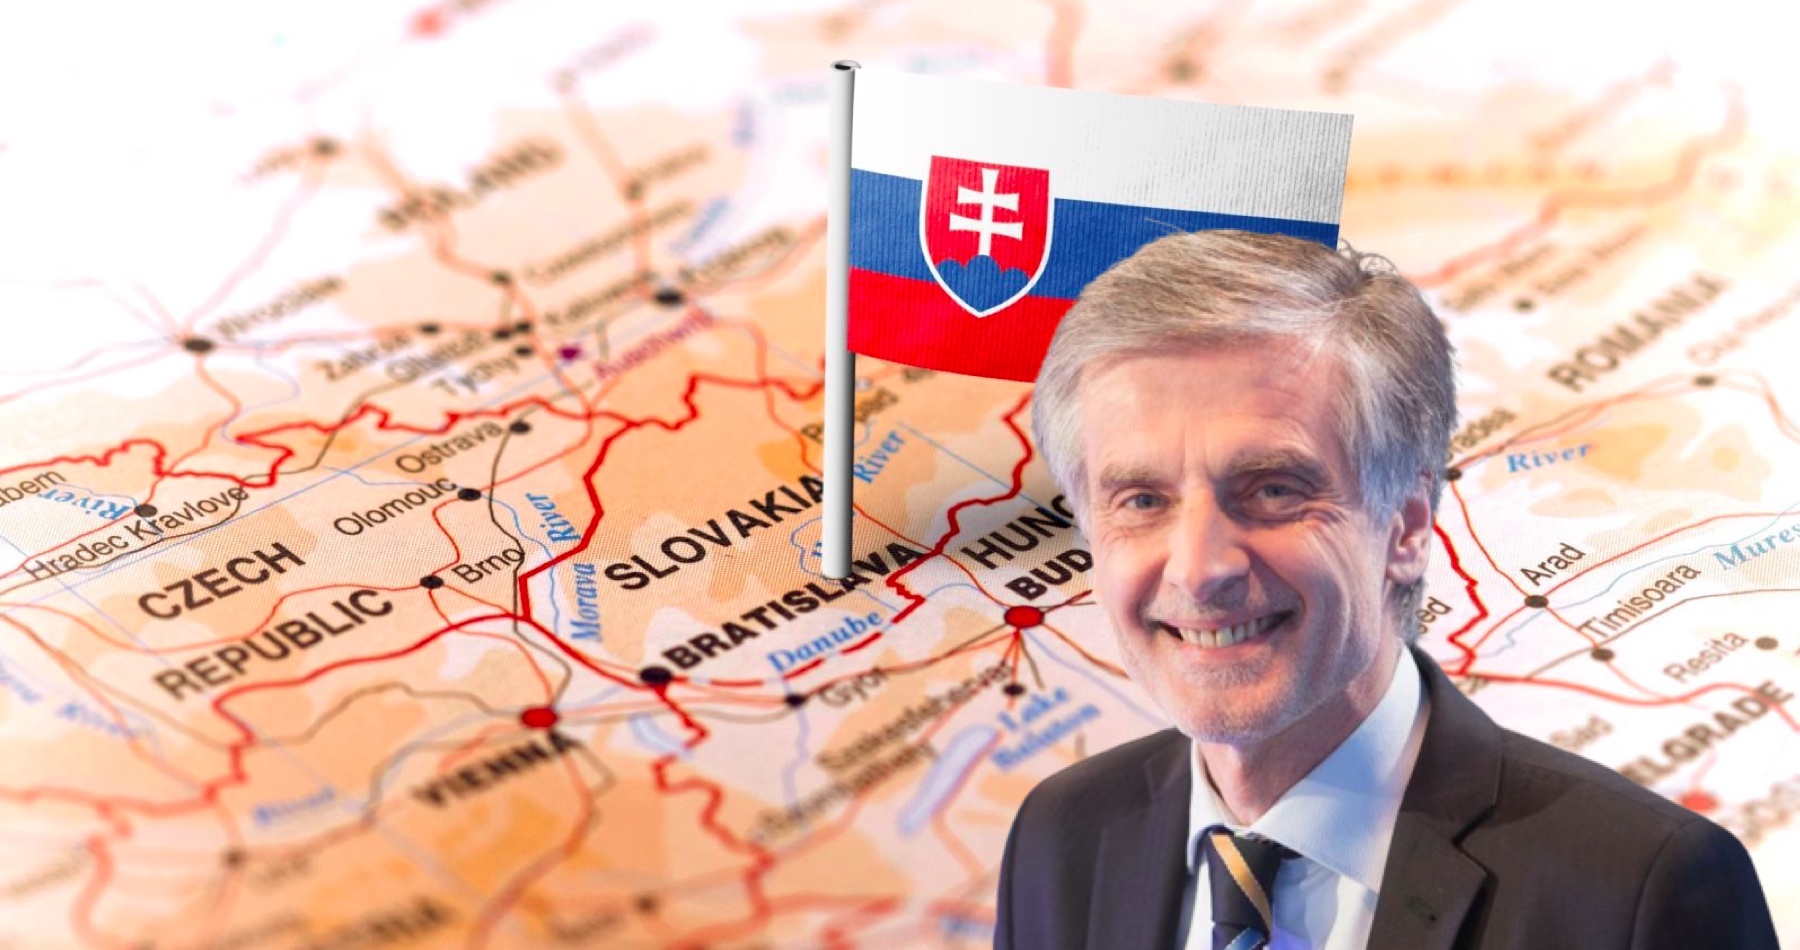 Bývalý politik a diplomat Peter Weiss o národnoštátnej dileme a potrebe vlády národnej záchrany, ktorá vníma Slovensko očami jeho občanov